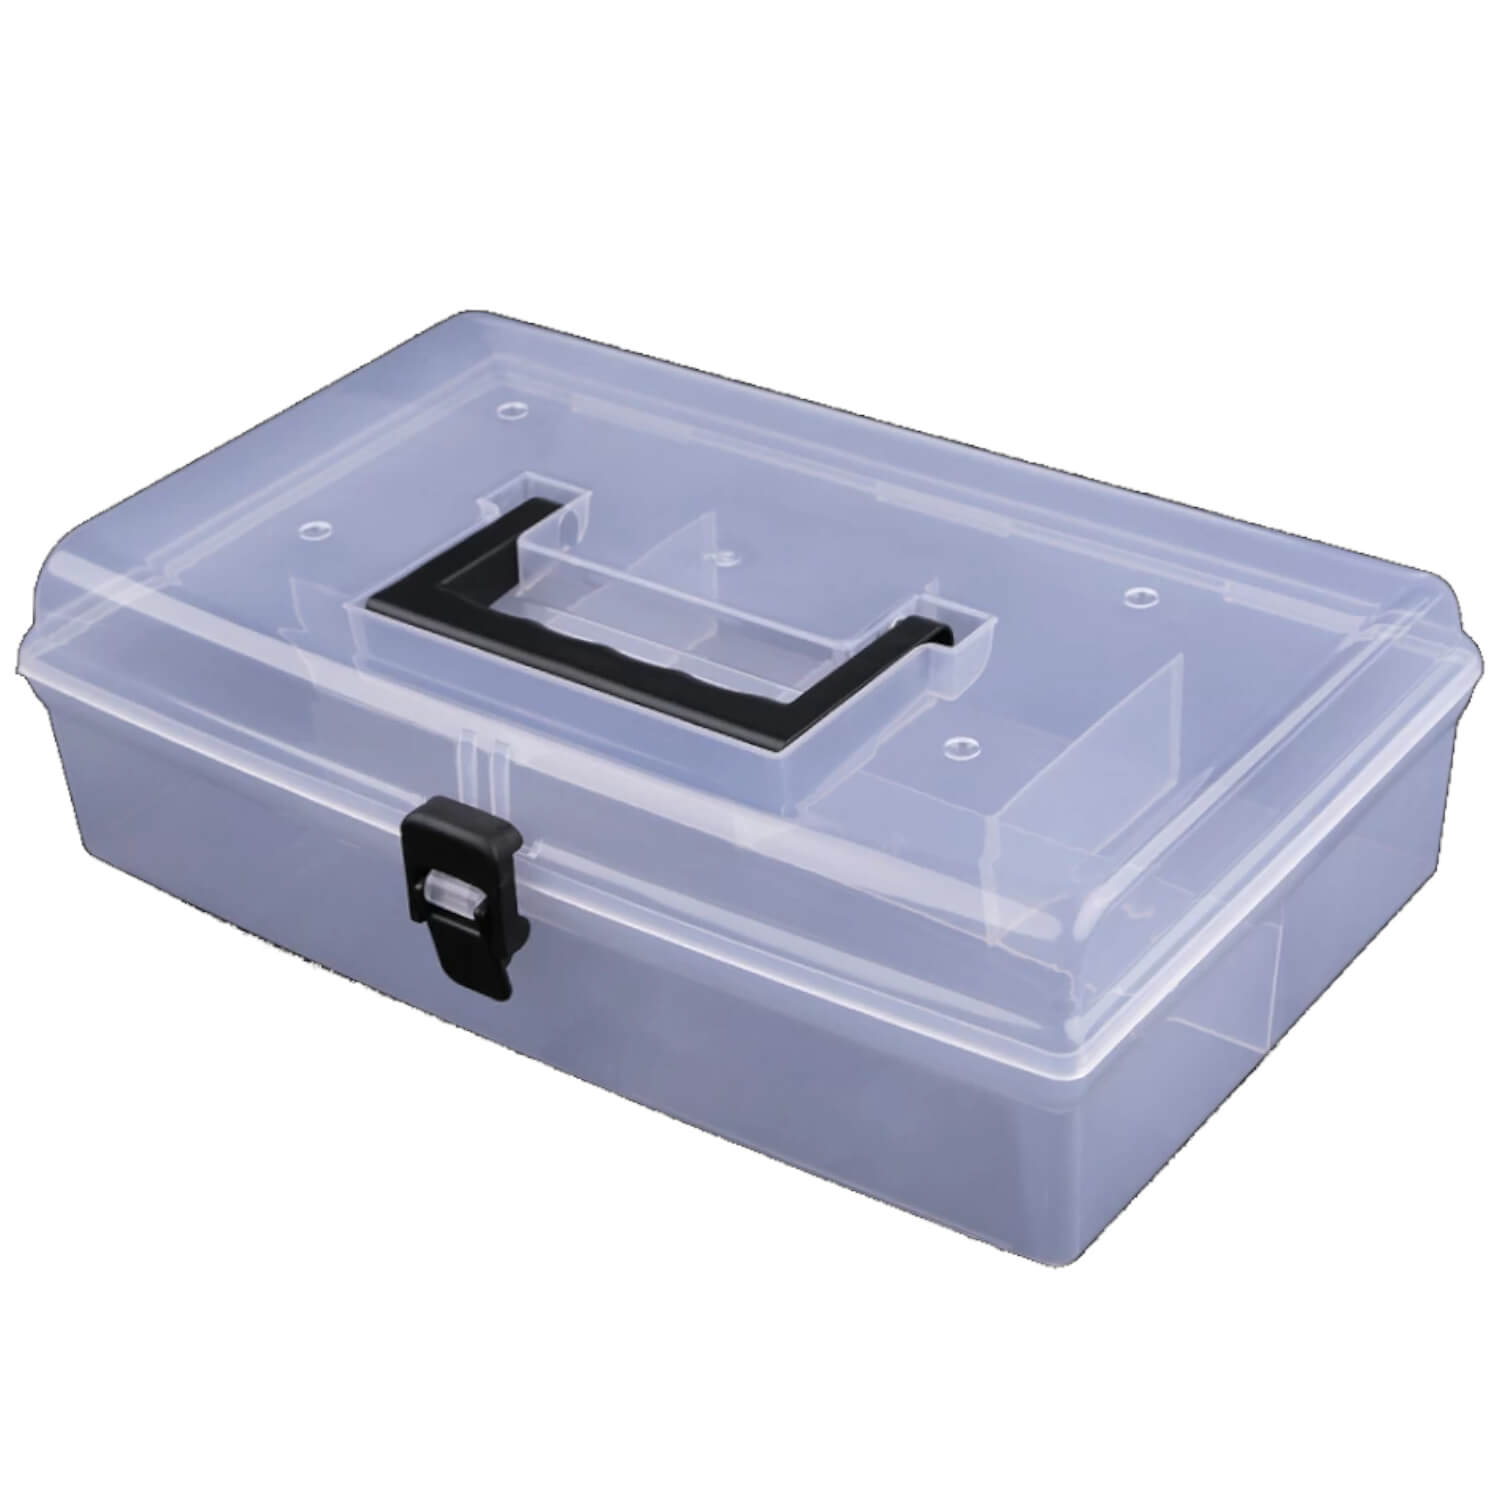 Sortierbox - Sortierkoffer aus flexiblen Kunststoff 18,0 x 29,5 x 8,5 cm (2)